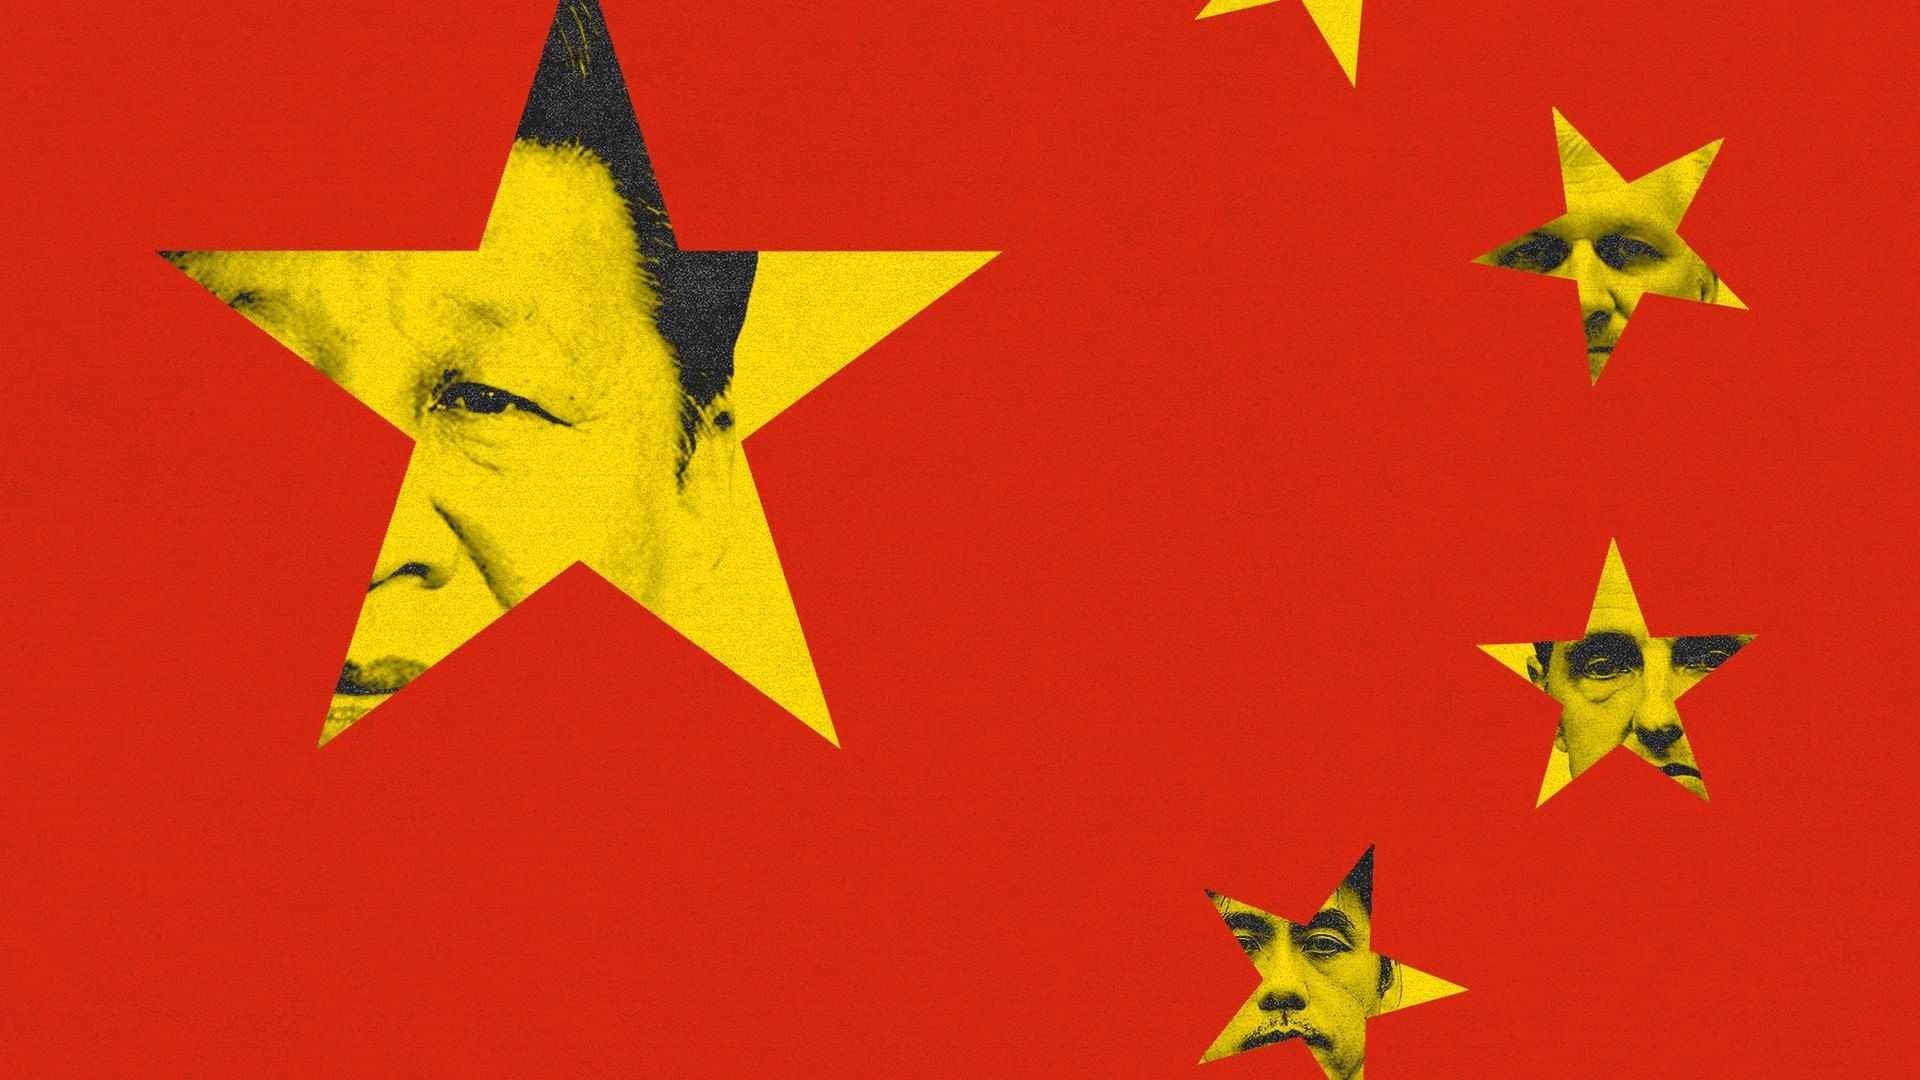 દિલ્હી: હોટલ-રેસ્ટોરન્ટ બાદ ચીની નાગરિકો માટે આ સેવા પર પણ પ્રતિબંધ